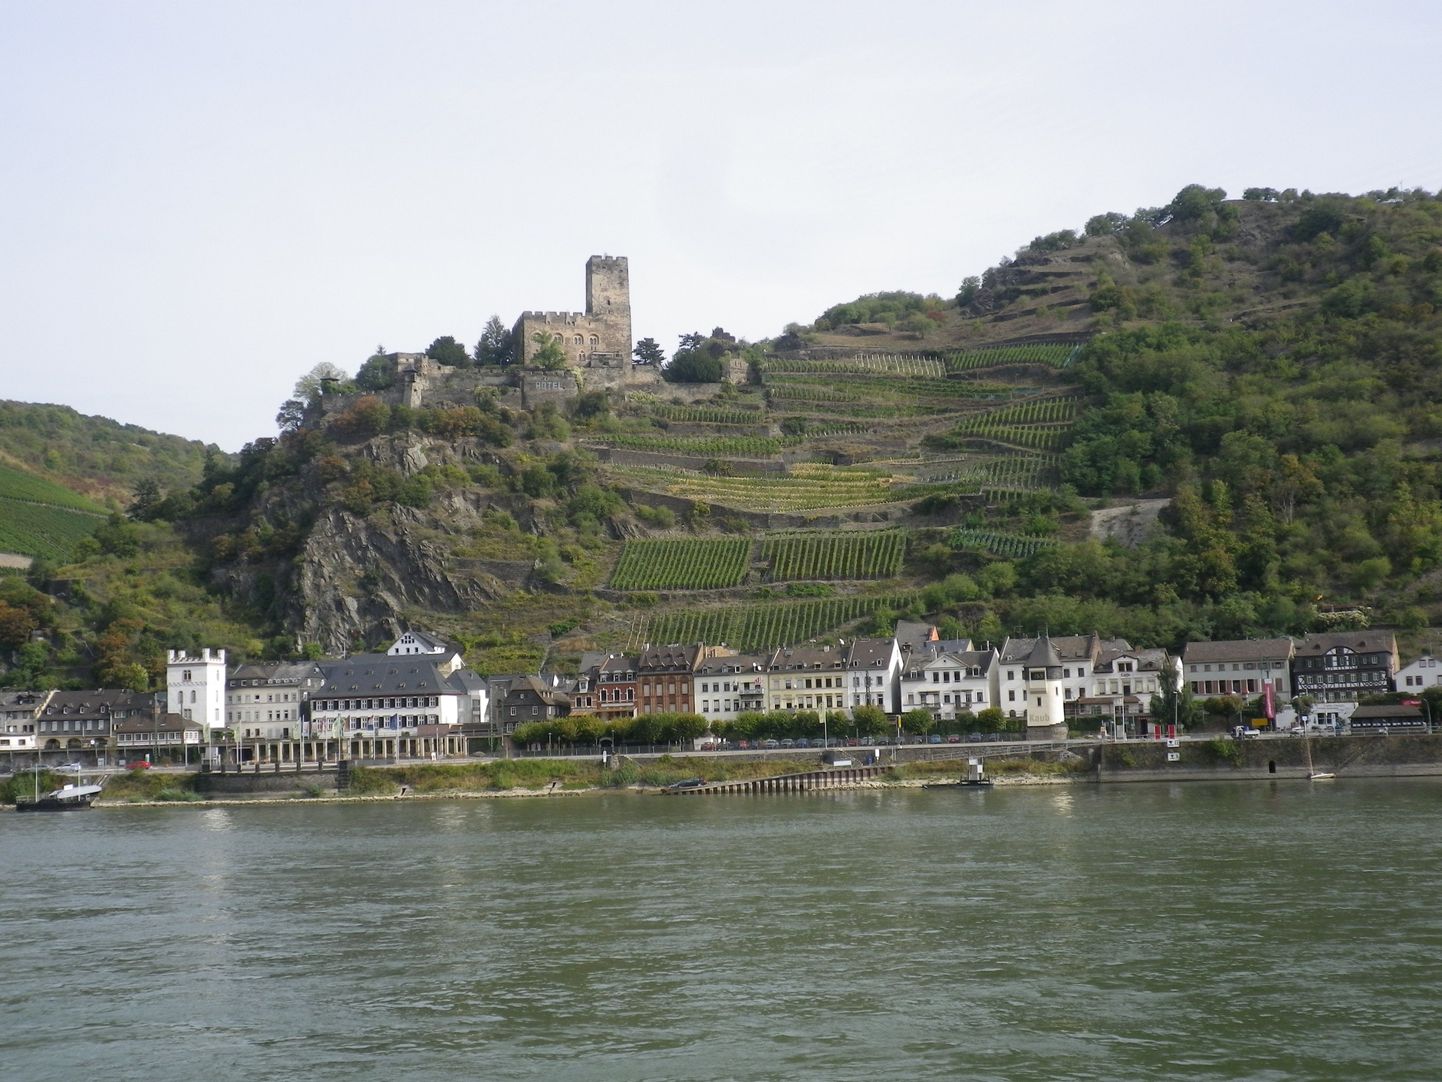 Типичный Rheinblick: виноградные лозы, игрушечные домики и старинные замки.